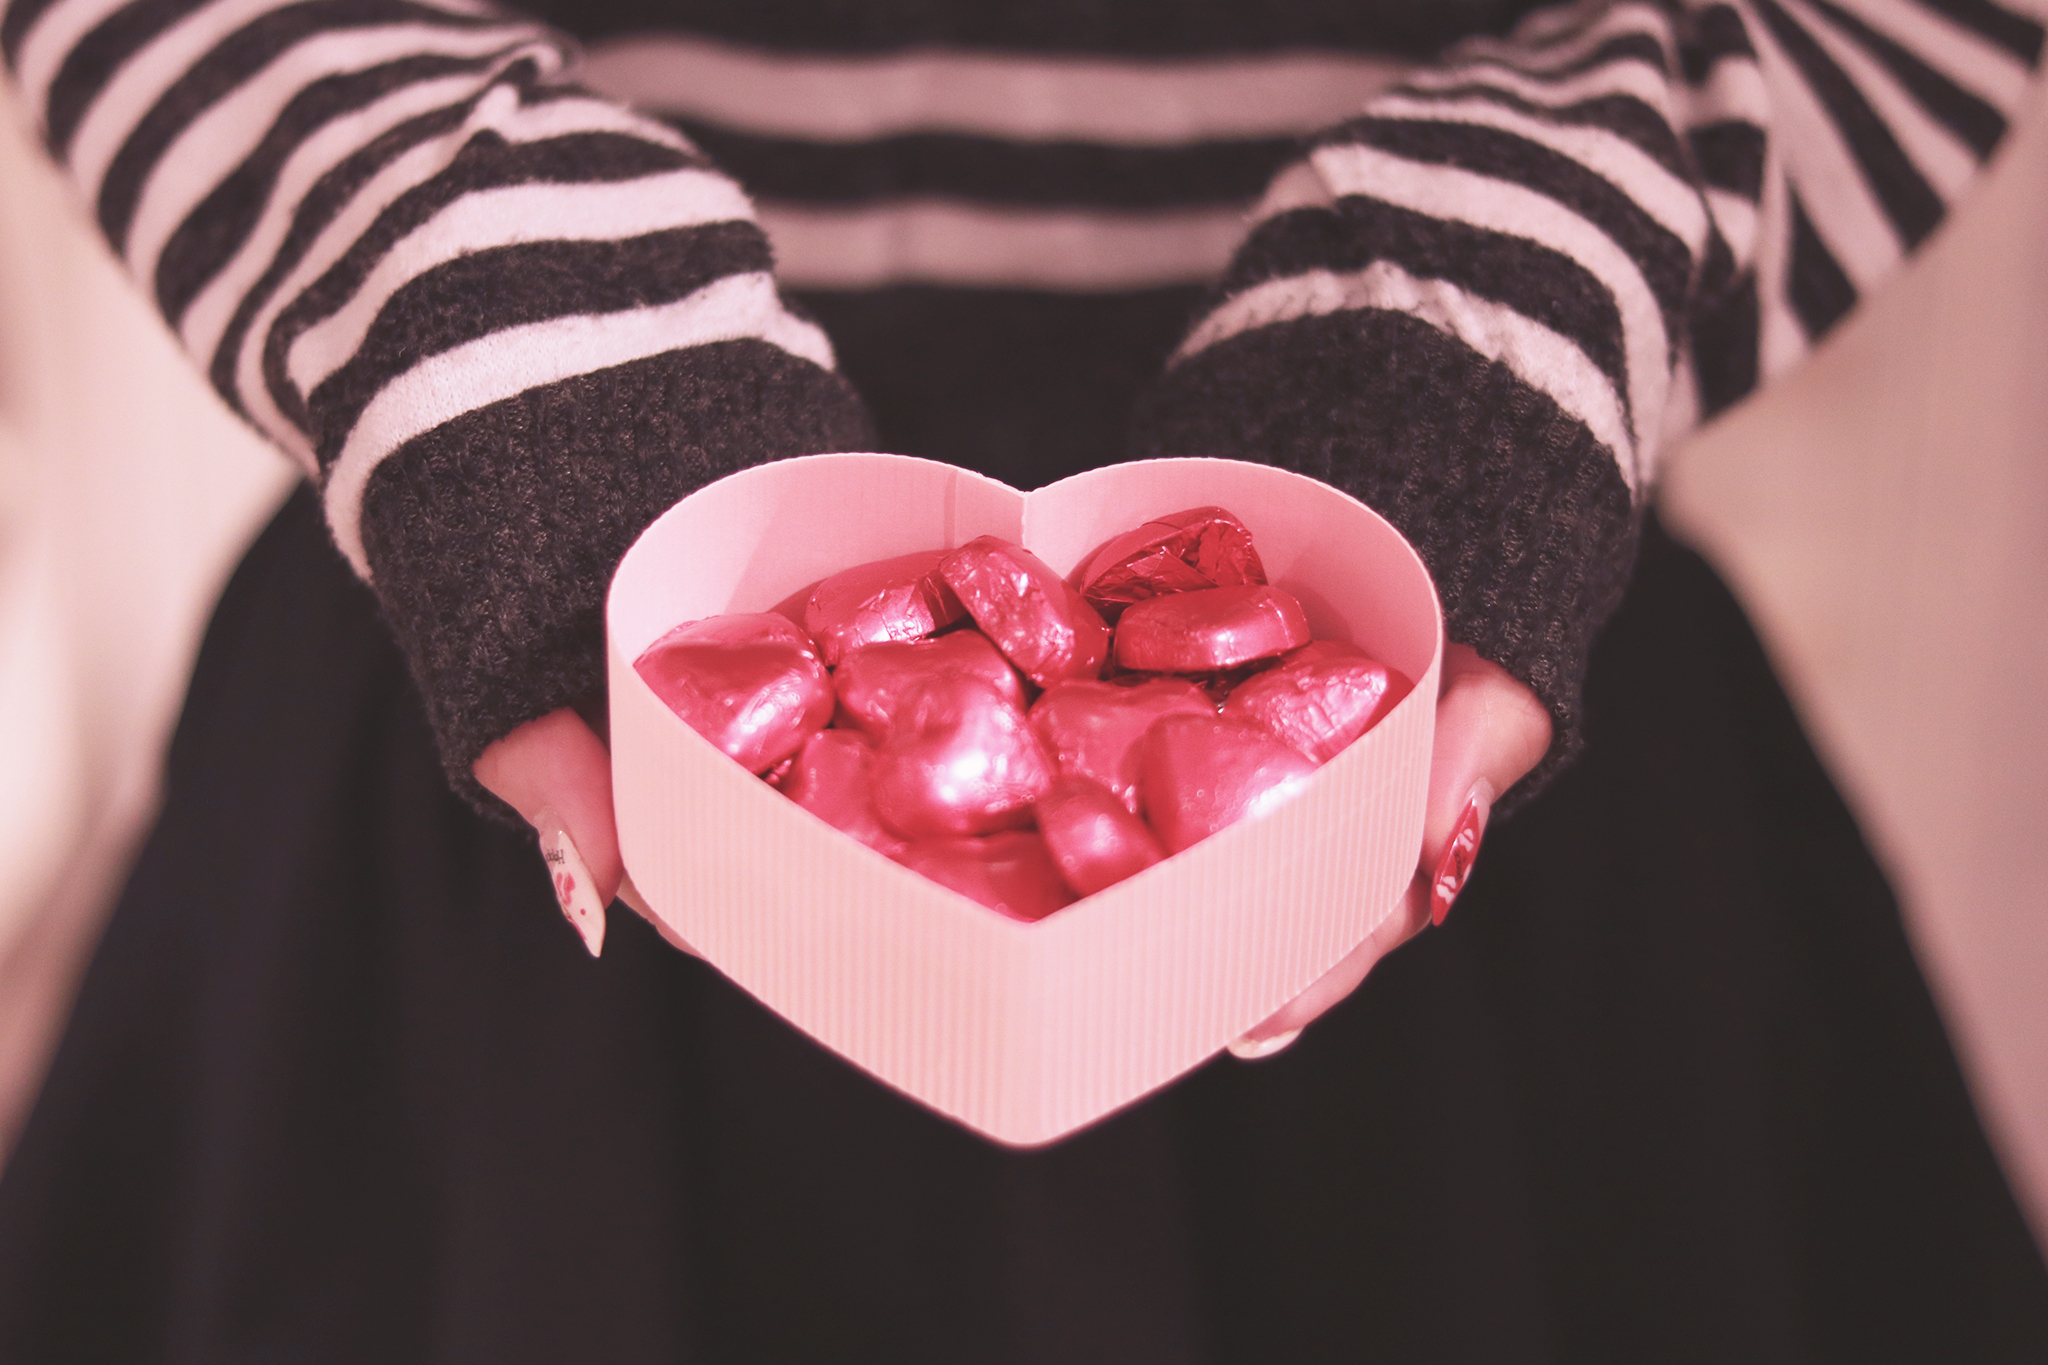 バレンタインはお菓子によって意味が変わる 渡す前に一覧で確認 Lovely